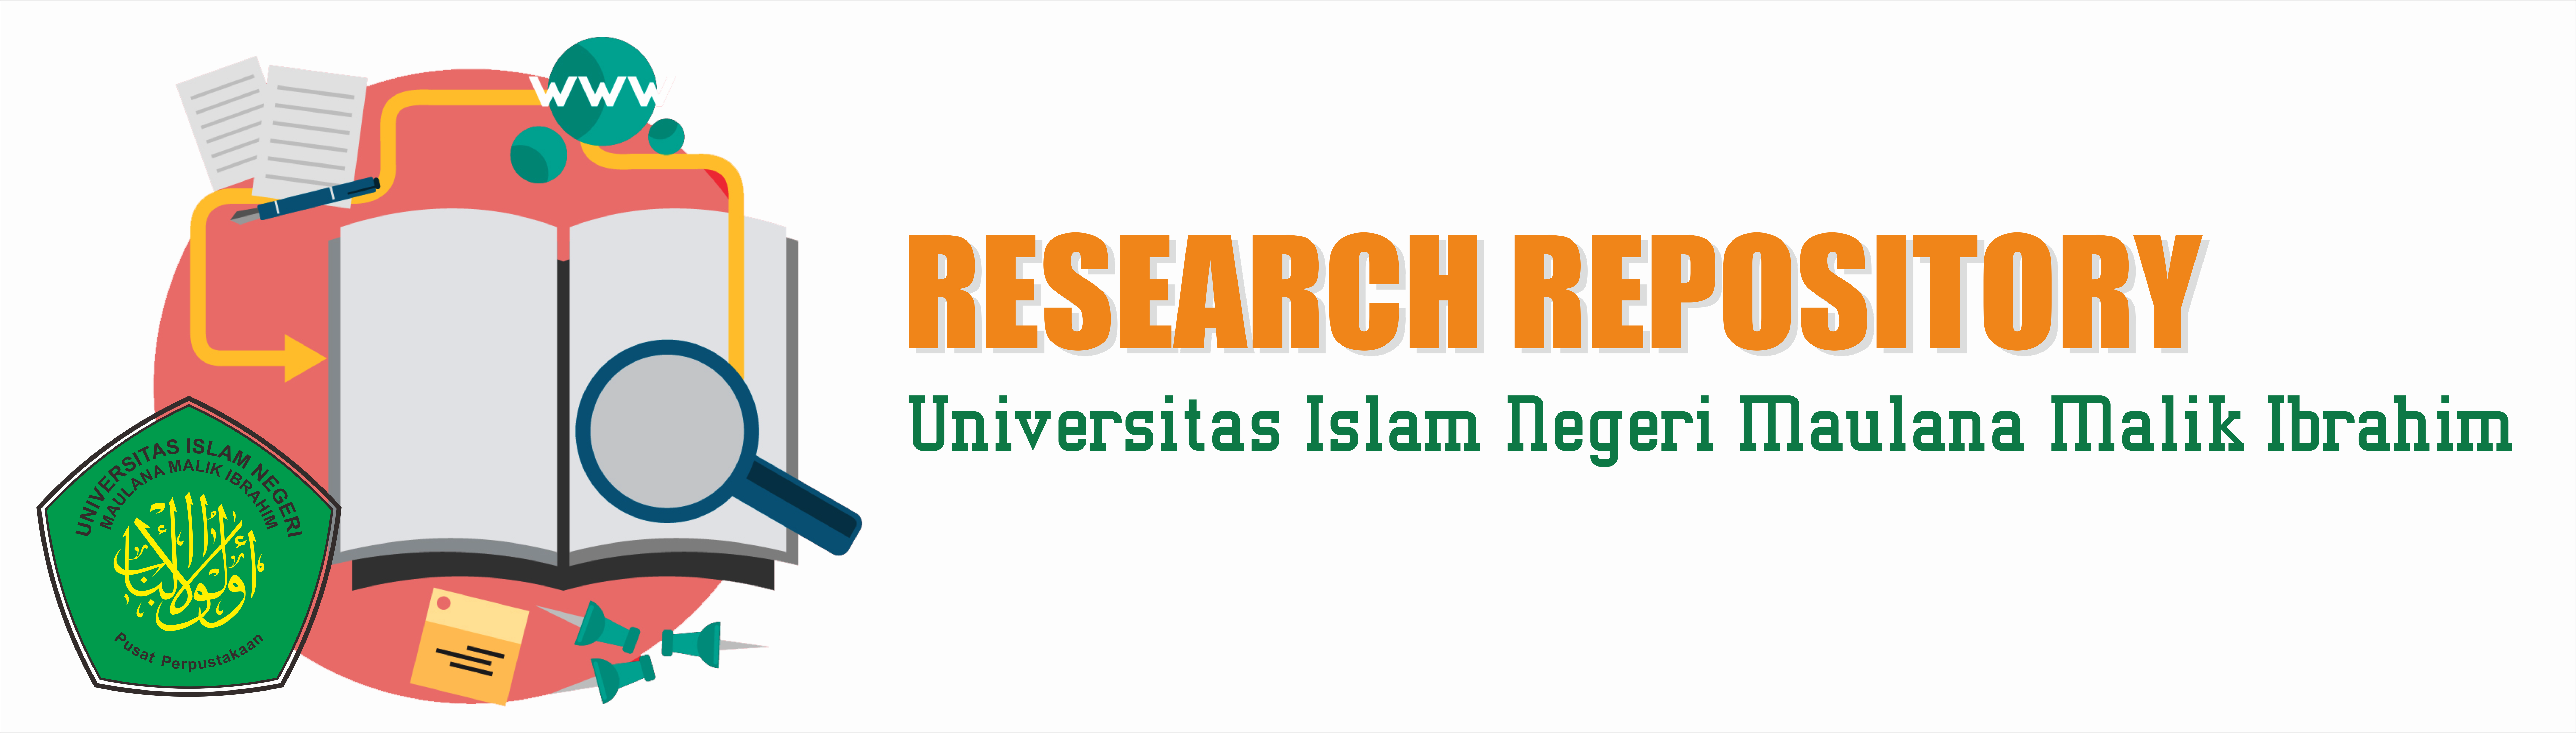 Repository of Maulana Malik Ibrahim State Islamic University of Malang